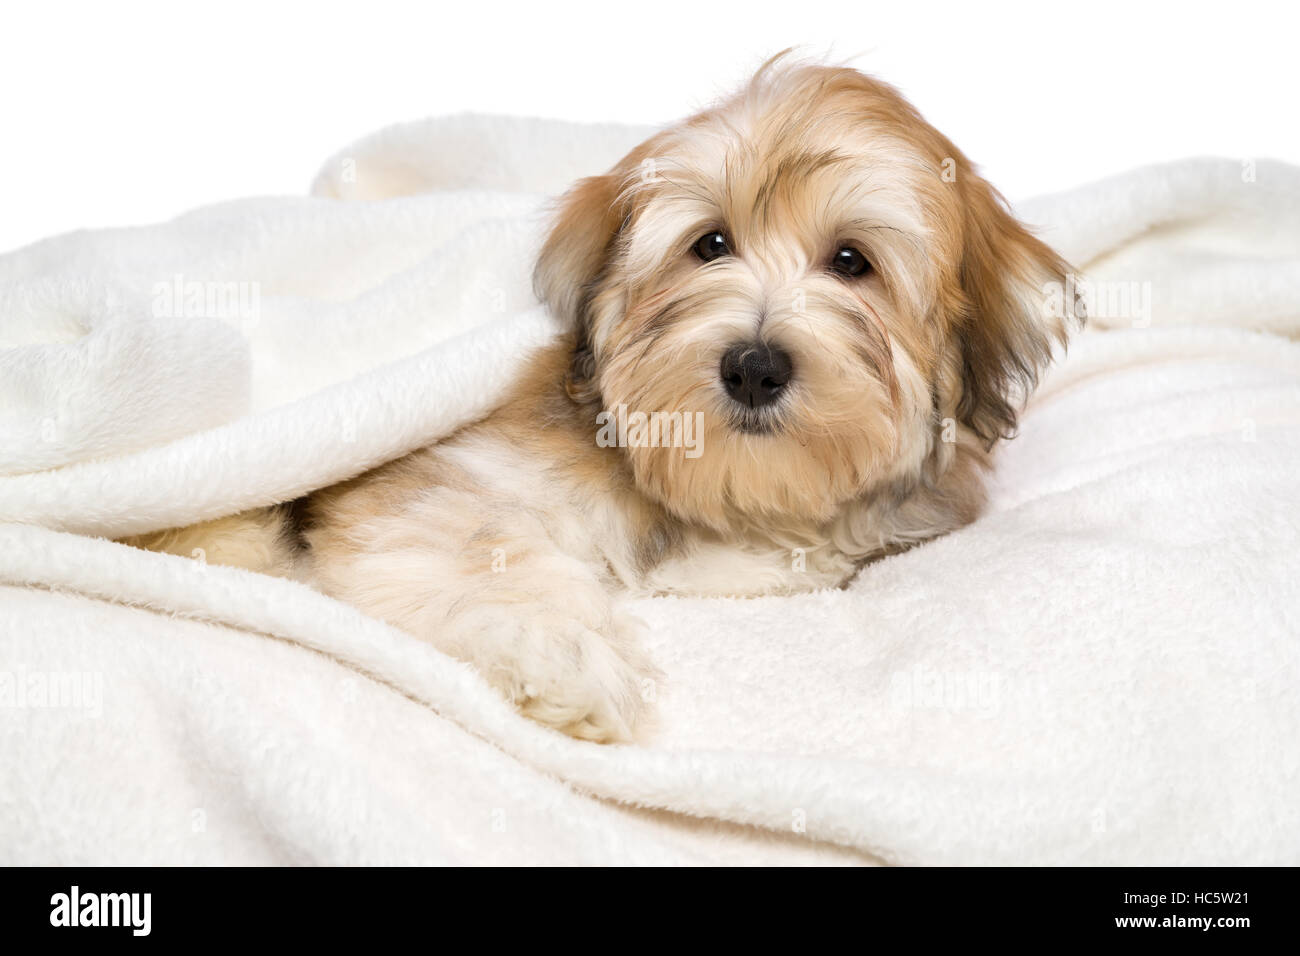 Bichon Havanais rouge mignon chiot chien est couché sur un couvre-lit blanc Banque D'Images